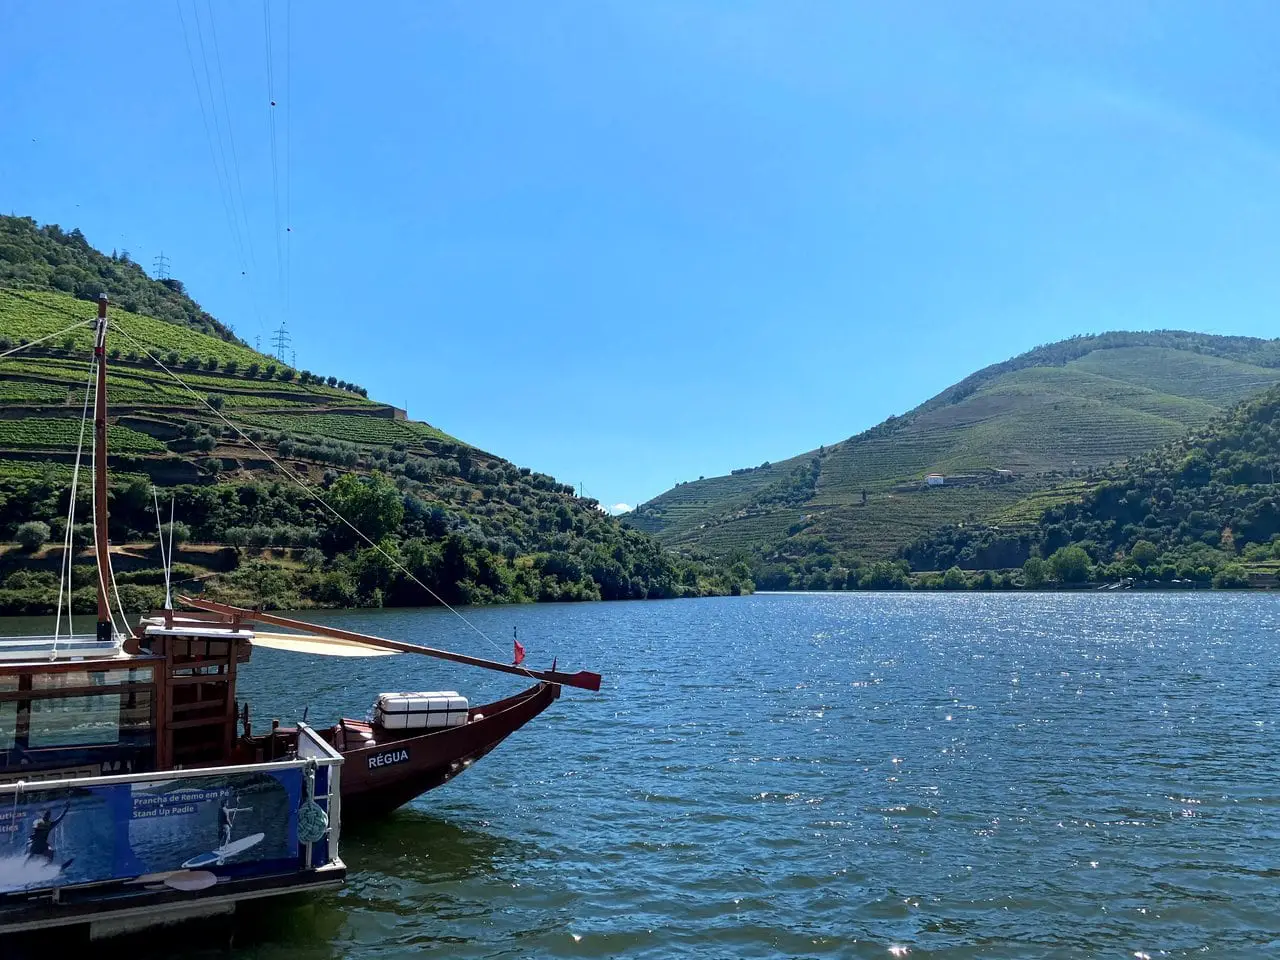 Douro river cruise in Portugal